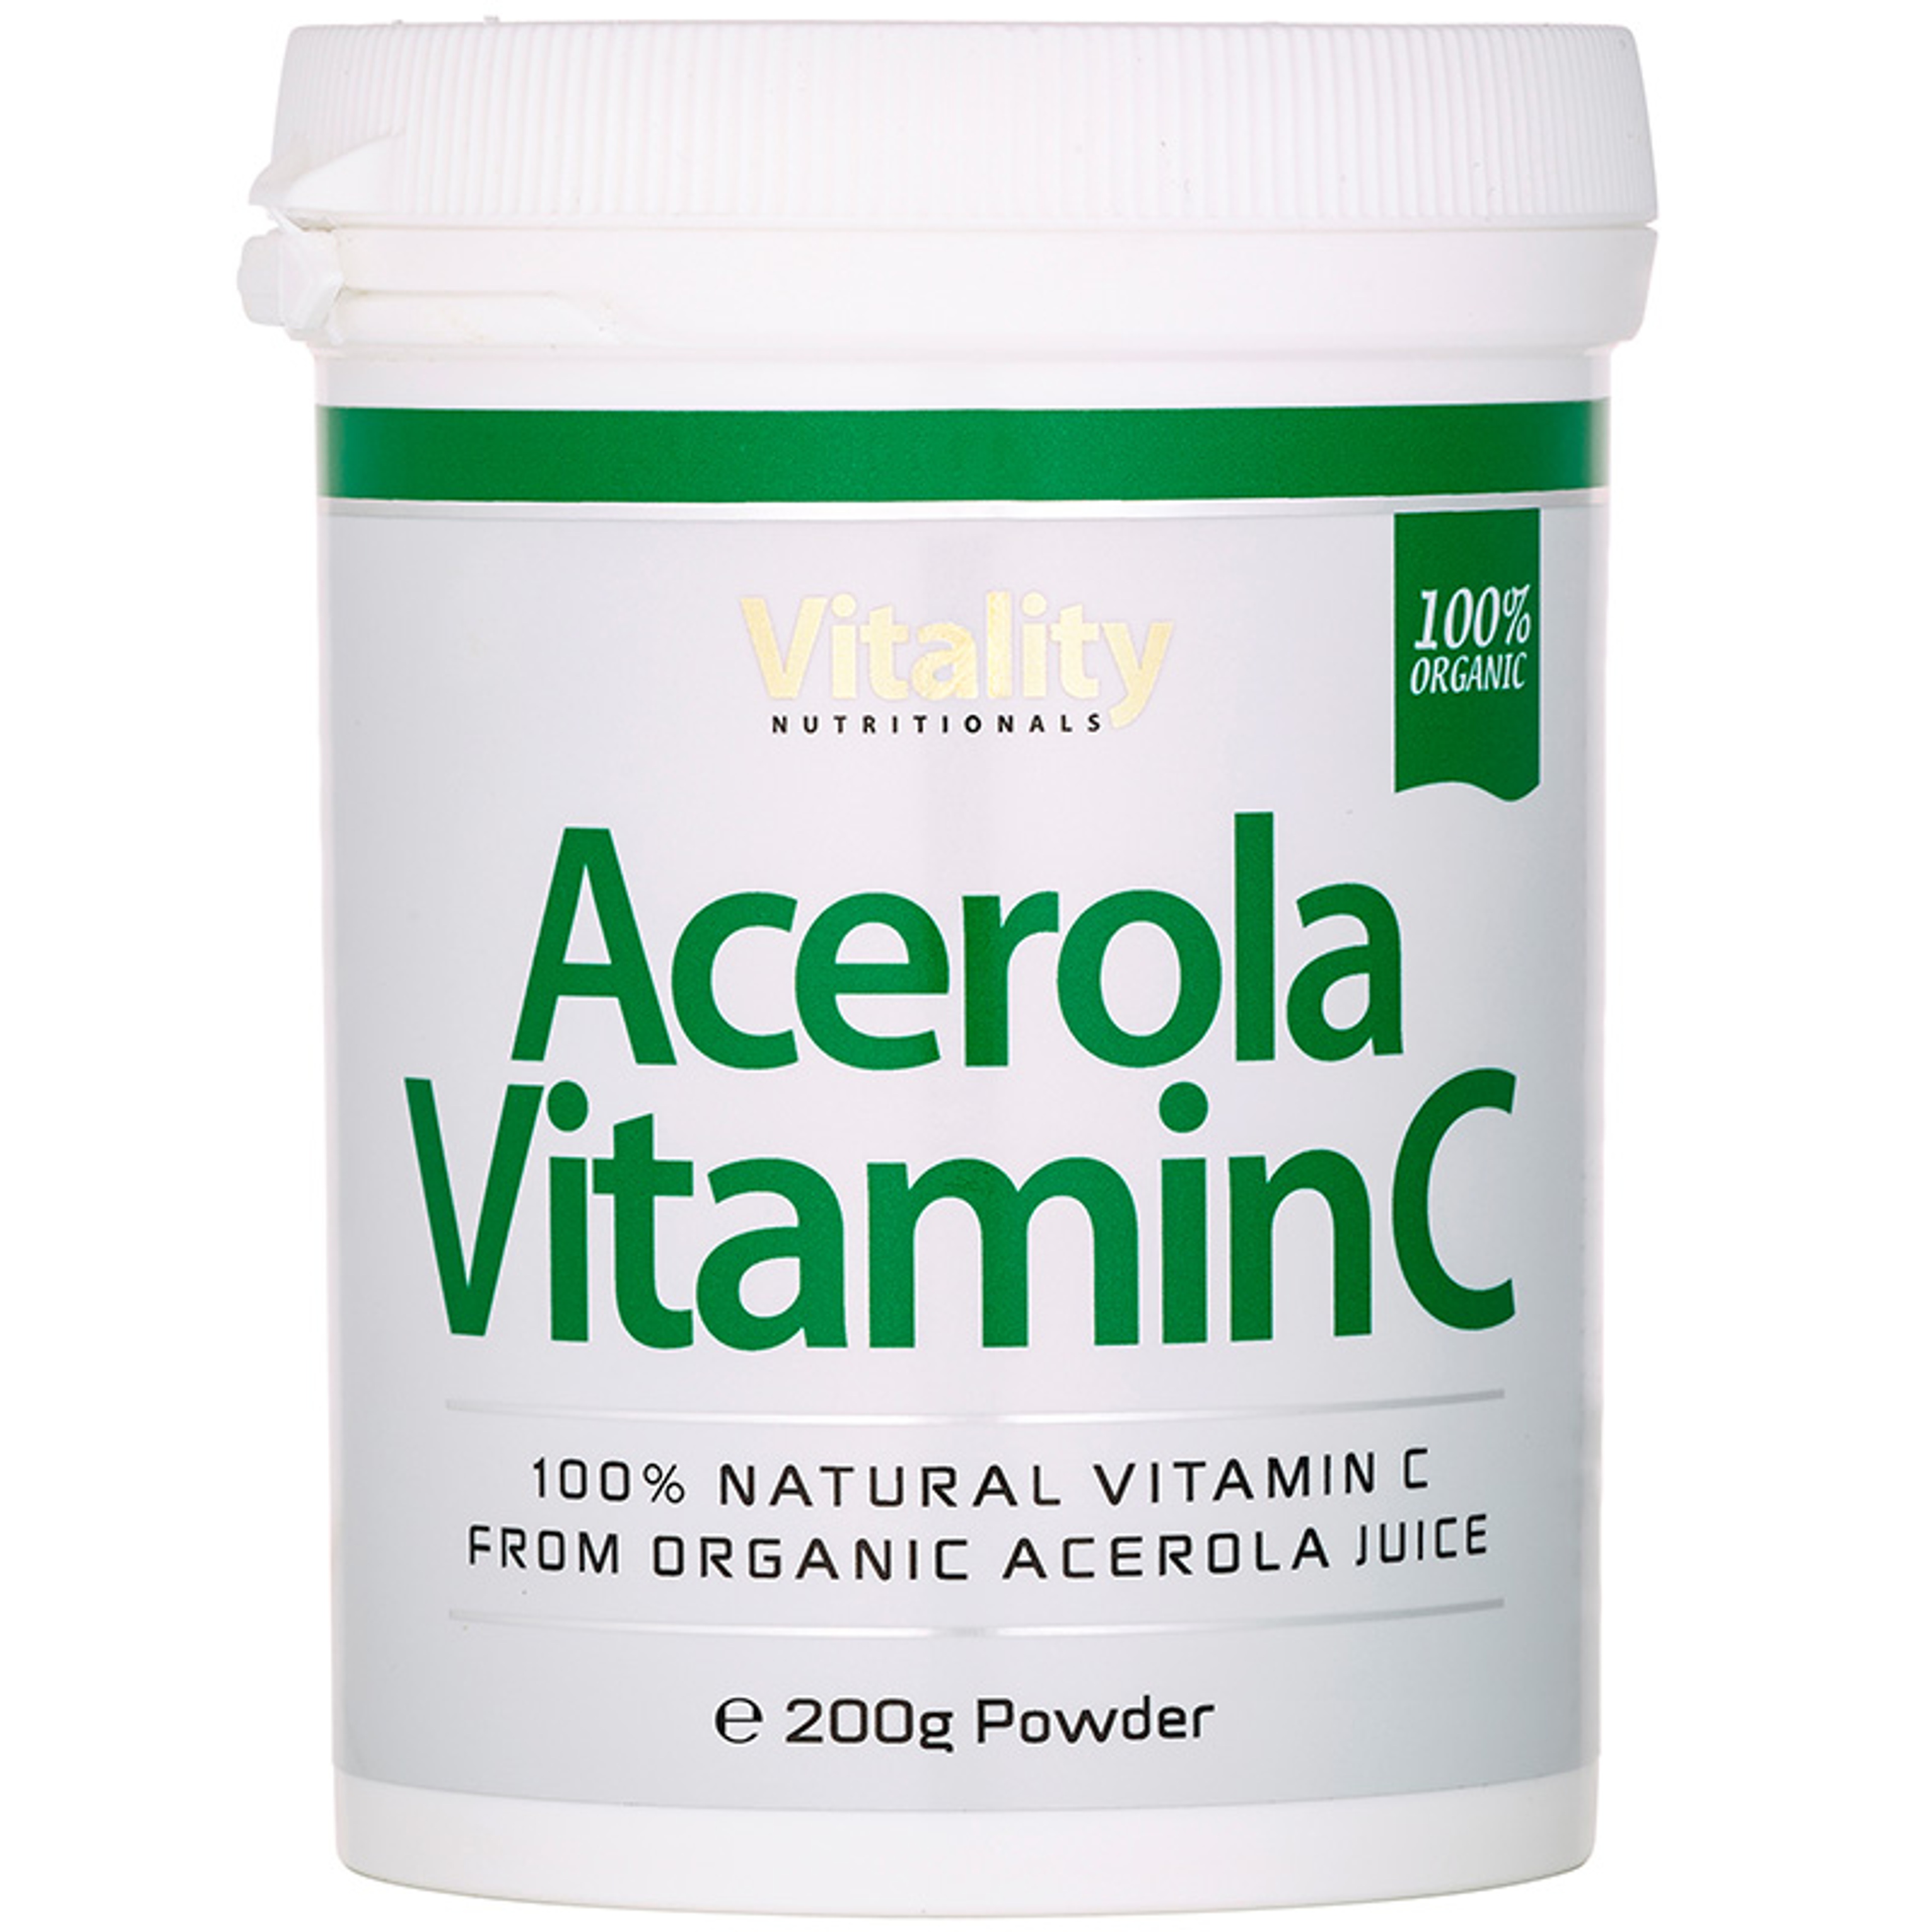 Acerola Vitamin C Organic Powder - 200 g Powder